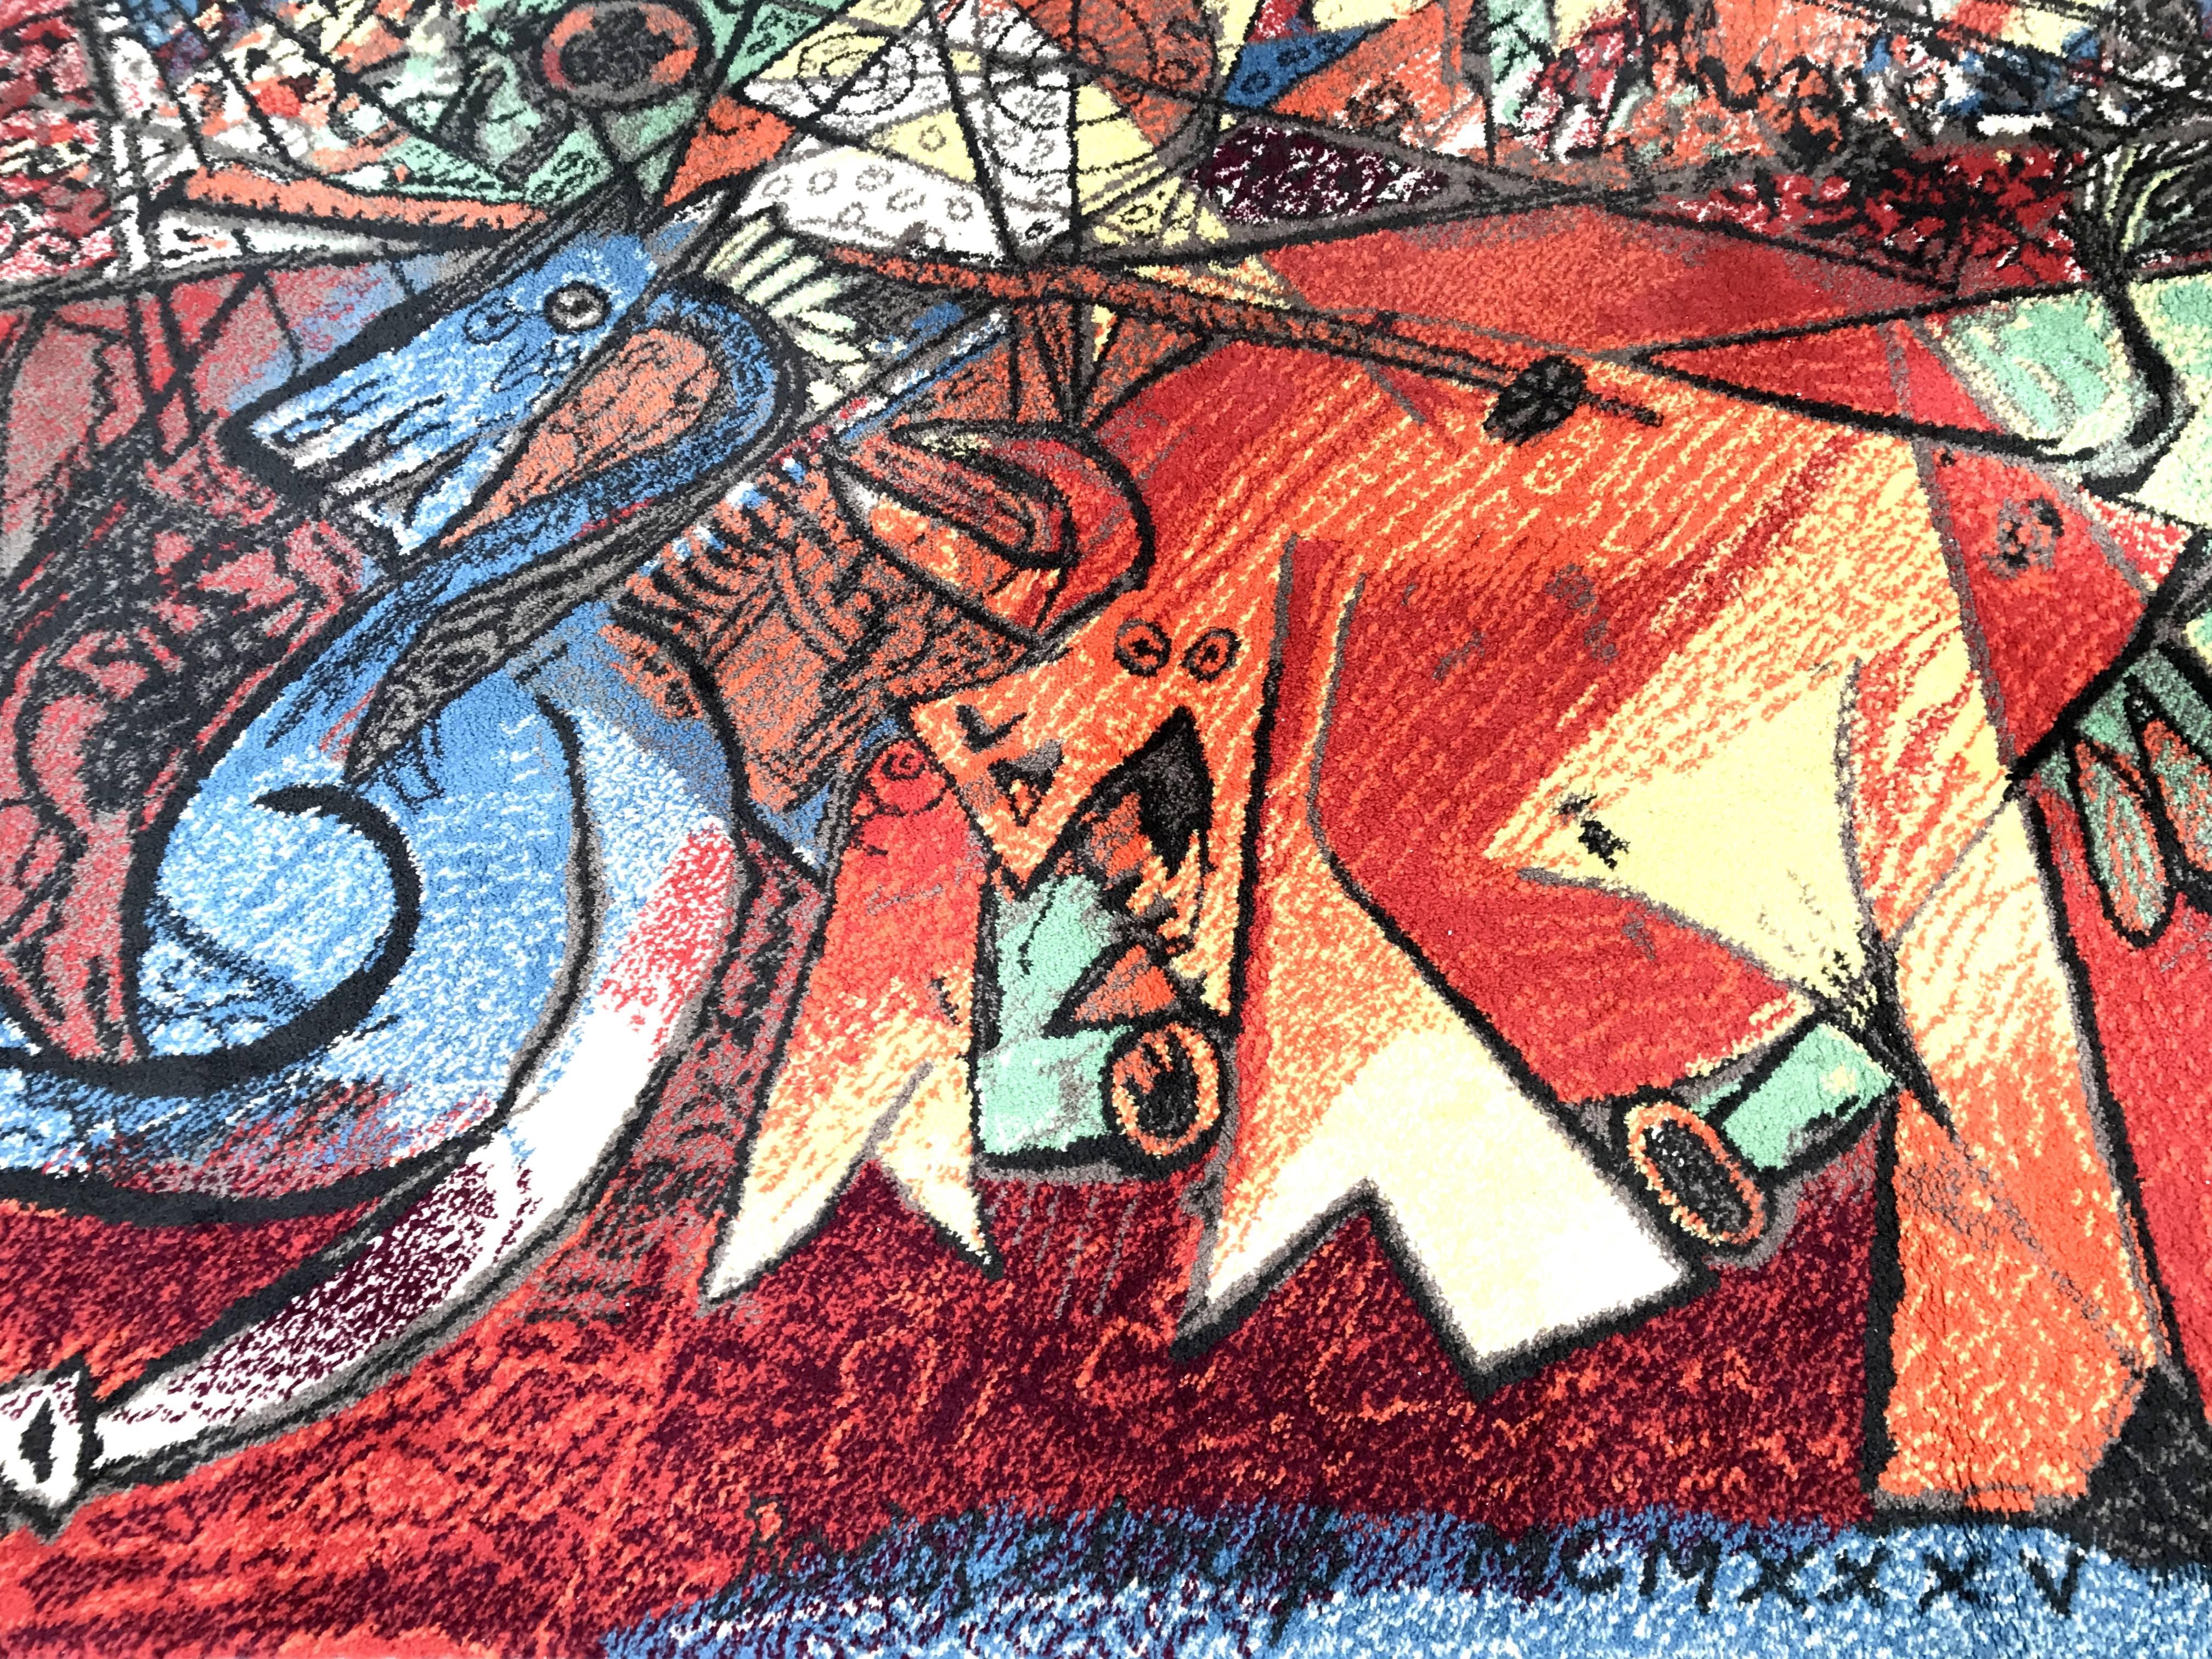 Tapis vintage Pablo Picasso par Ege Art rug, Scandinavie, milieu du 20ème siècle. Un magnifique tapis d'Ege Art rug, tissé en Scandinavie, présentant une composition conçue par Pablo Picasso. Ce tapis remarquable met en valeur le style cubiste